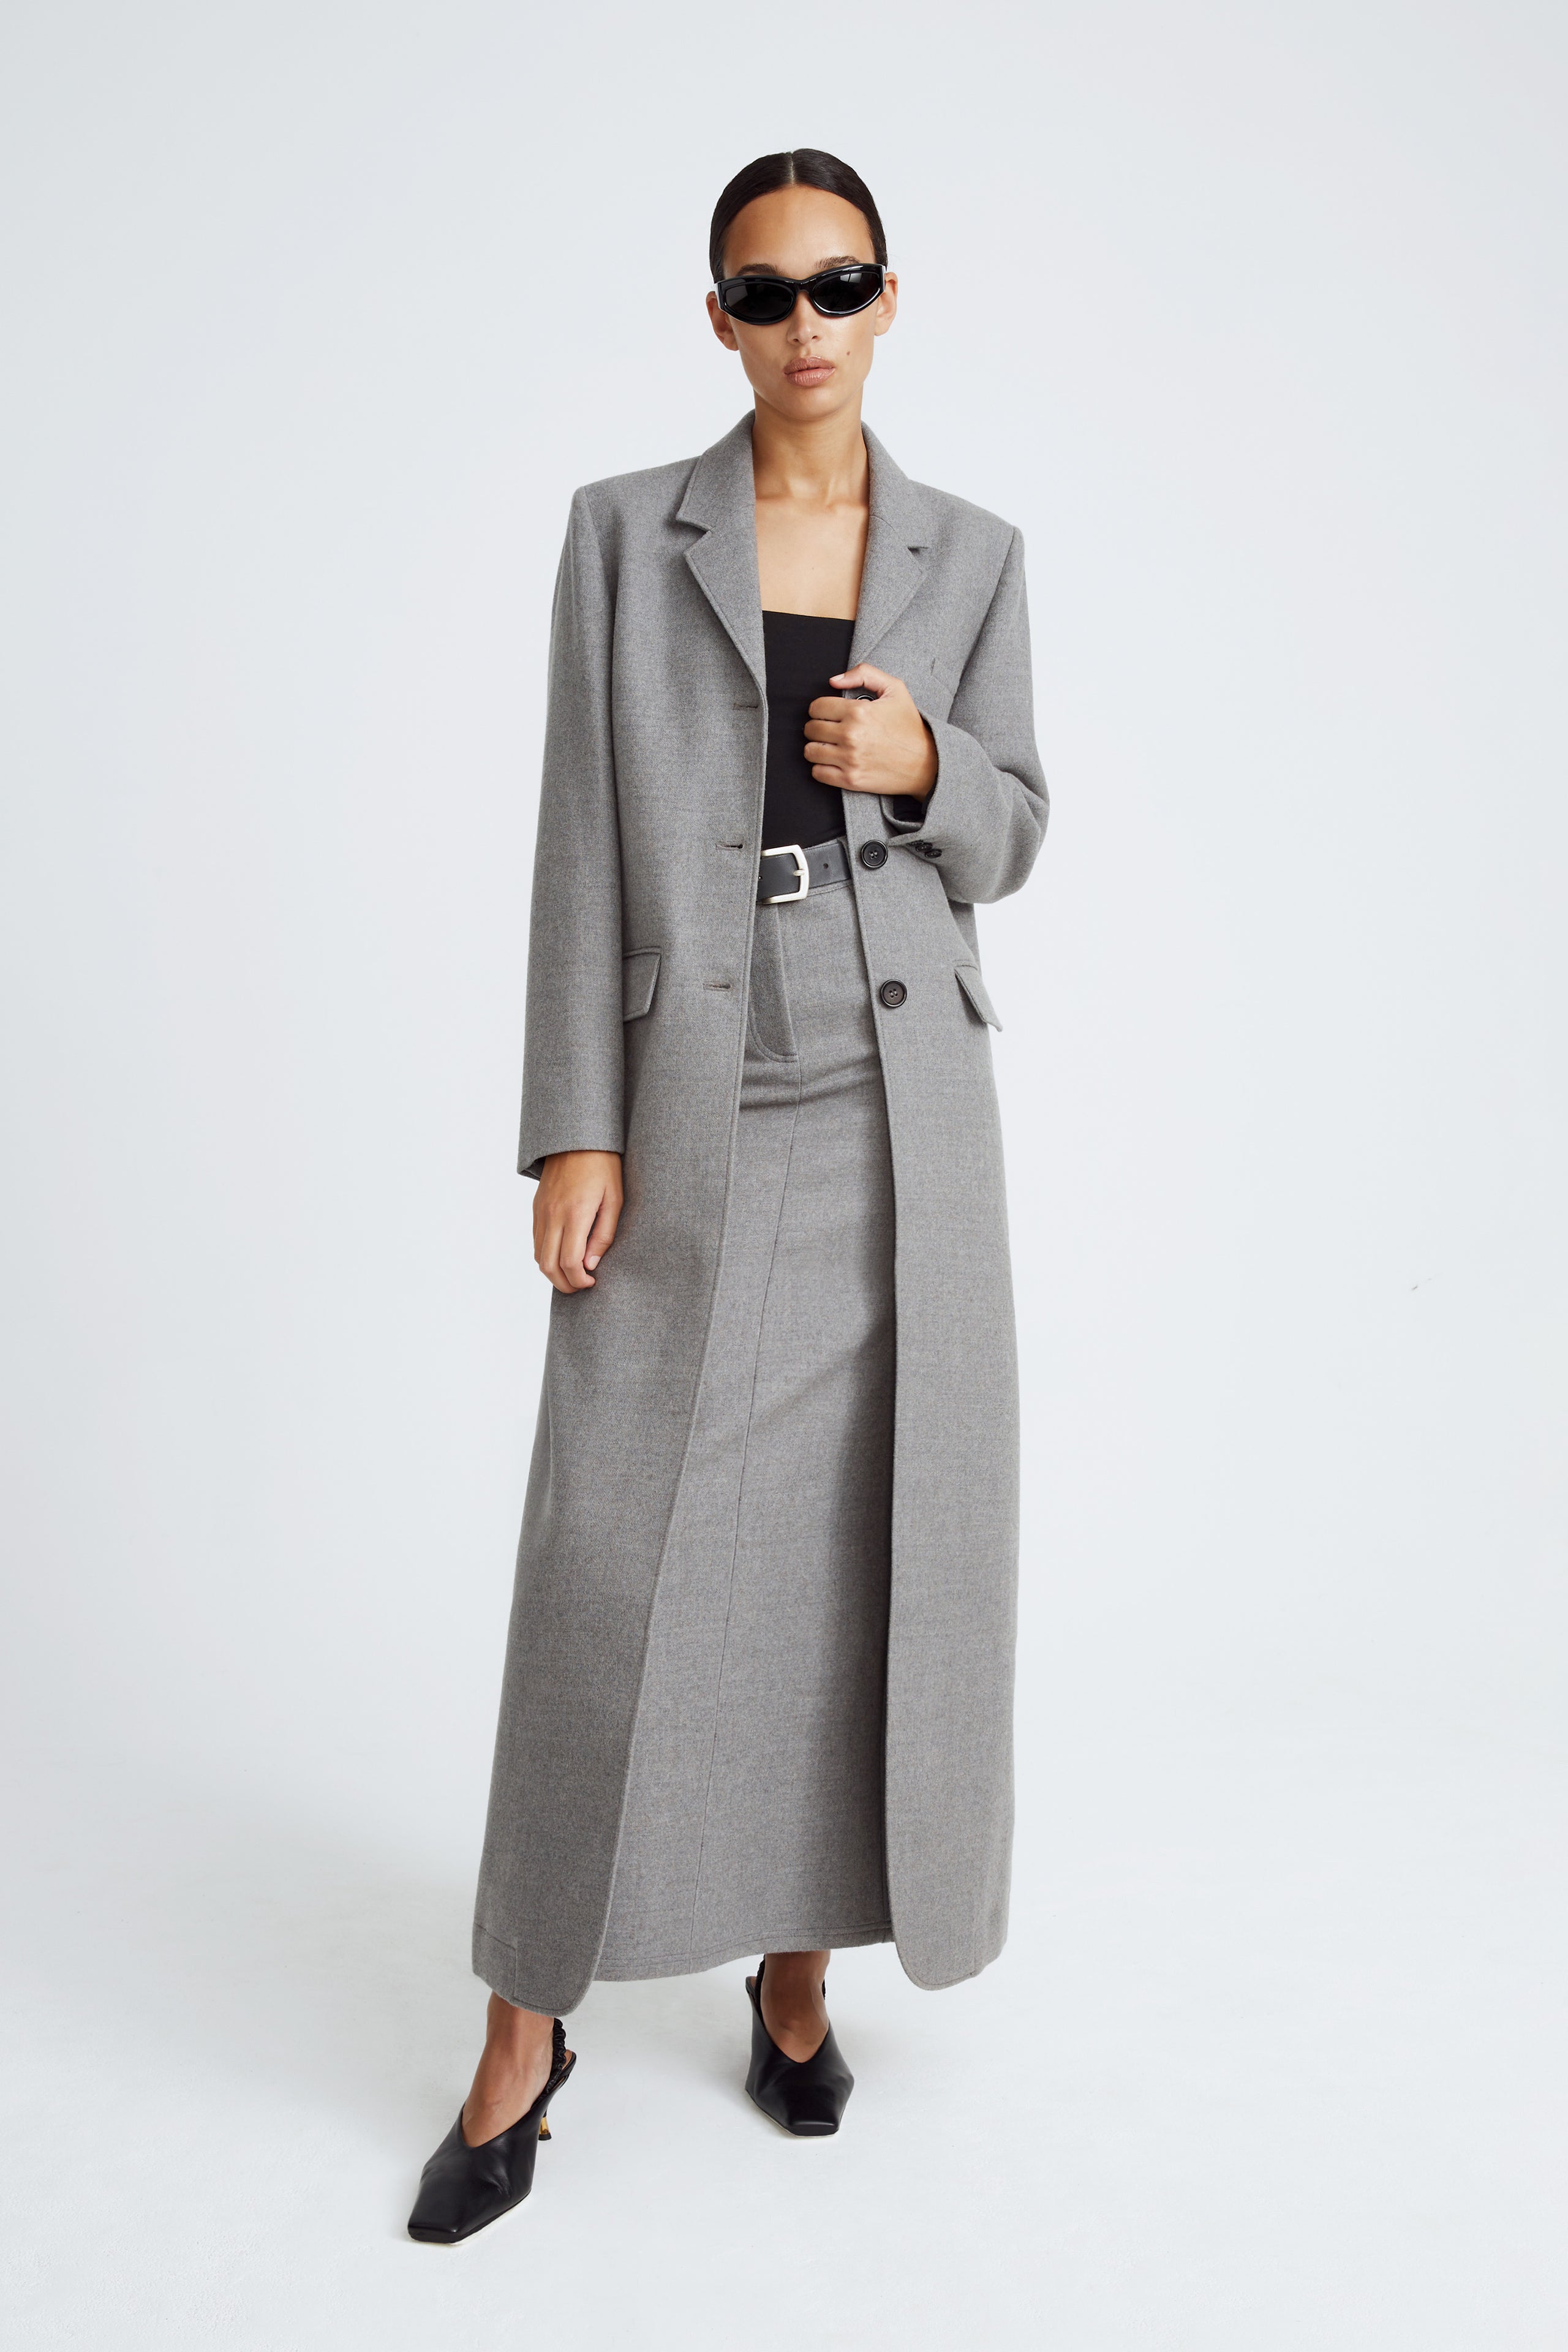 Model is wearing the Celine Light Grey Long Wool Coat Front